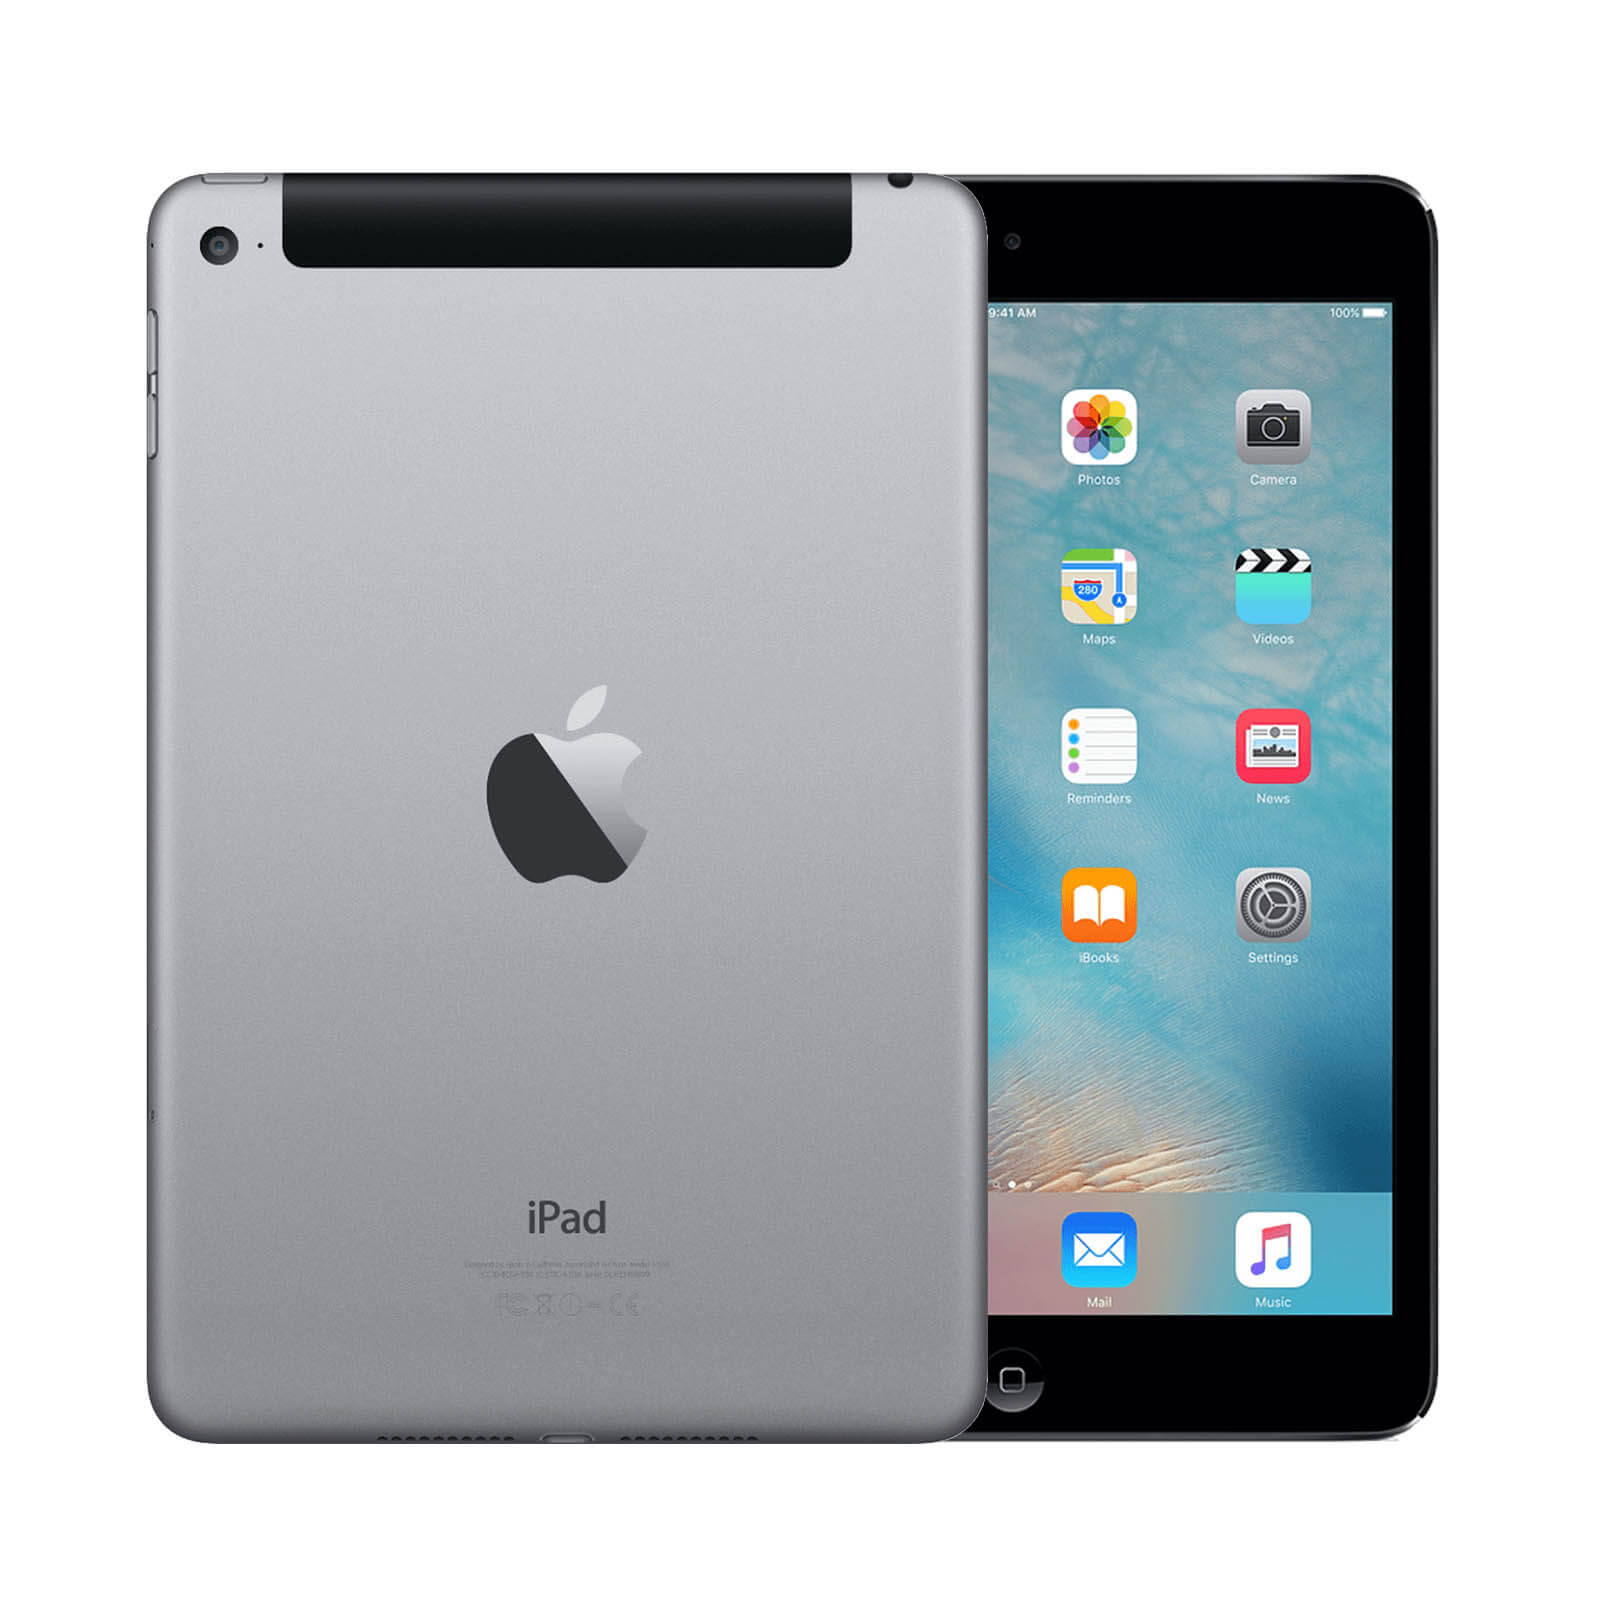 Apple iPad Mini 4 128GB Space Grey WiFi & Cellular - Very Good 128GB Space Grey Very Good